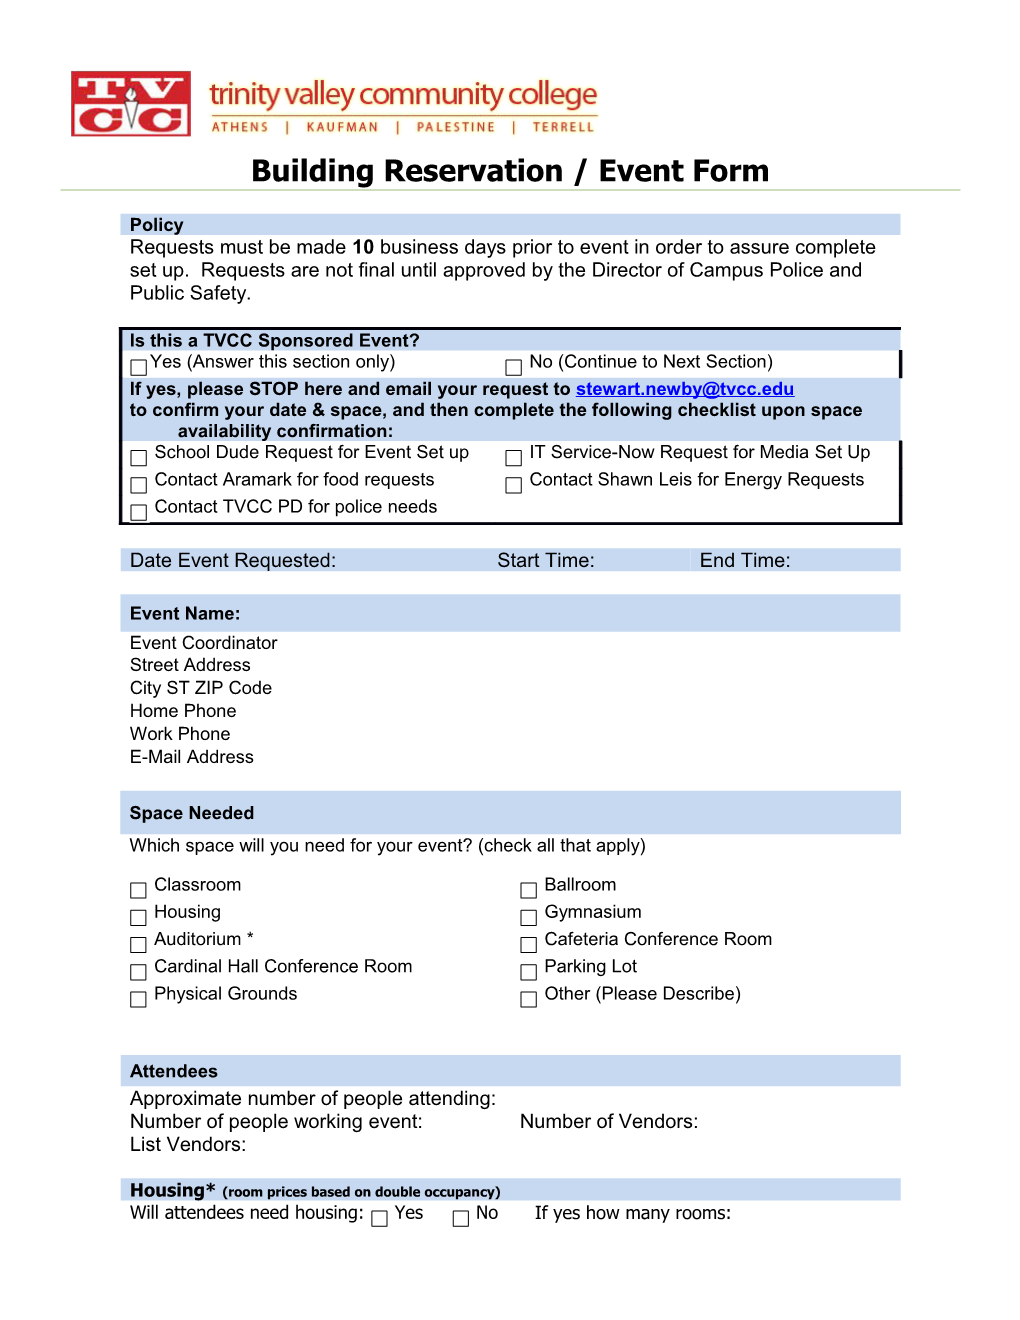 Building Reservation / Event Form